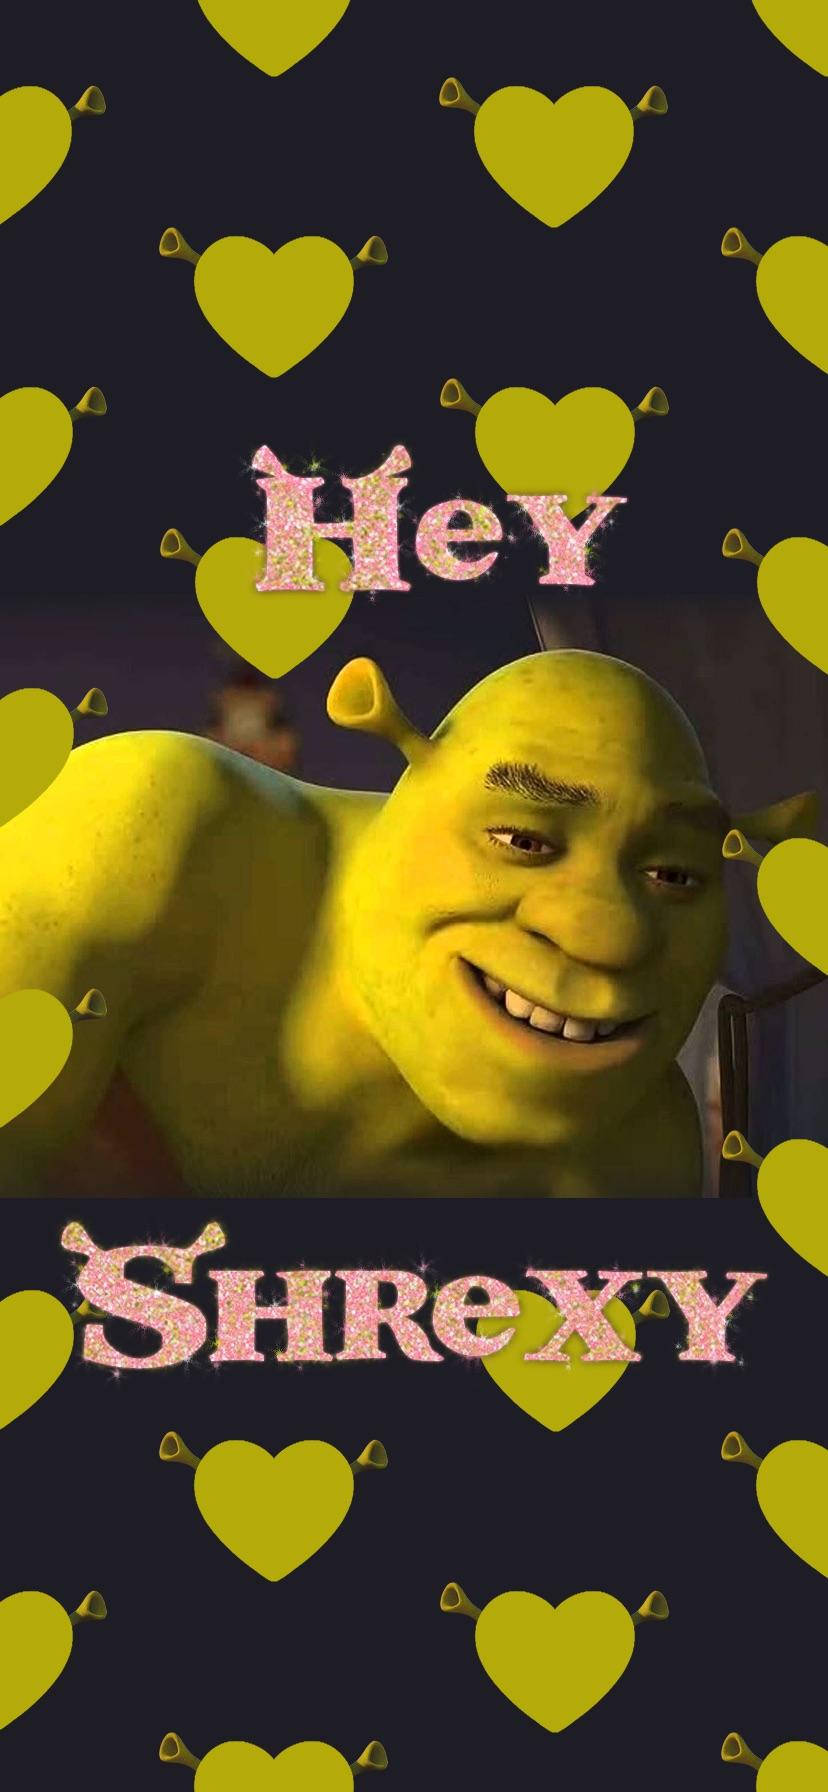 Shrek Hey Shrexy Wallpaper